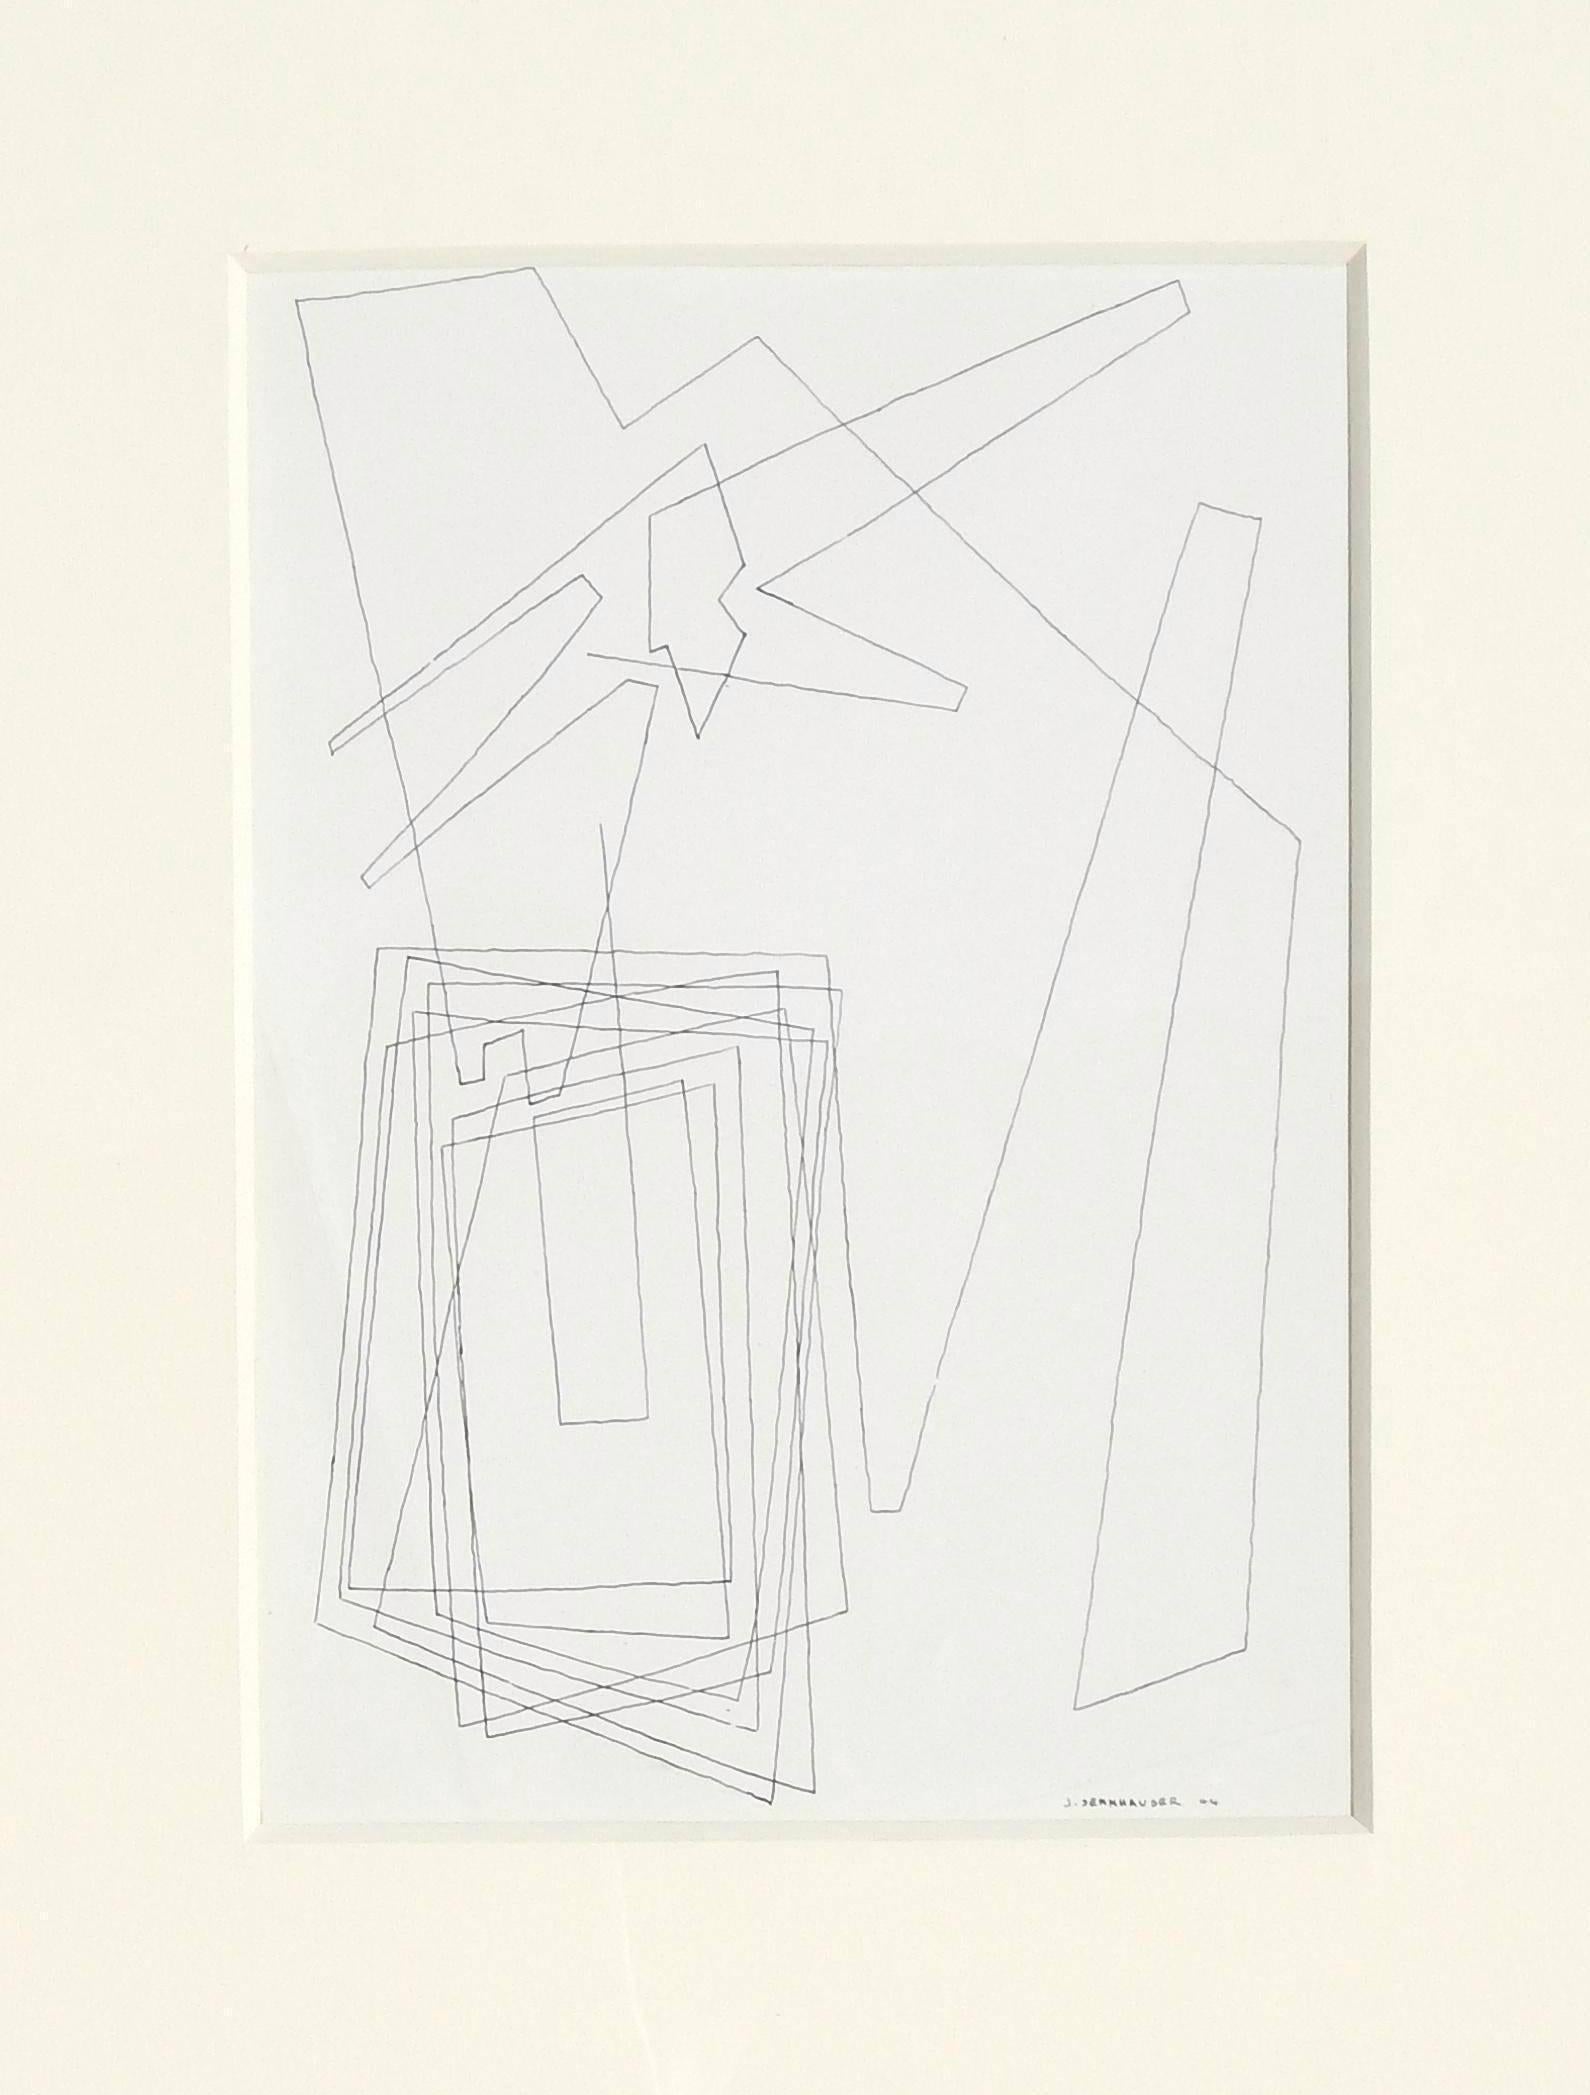 Dessin original à la plume et à l'encre de l'artiste abstrait new-yorkais John Sennhauser (1907-1978)
Signé en bas à droite 